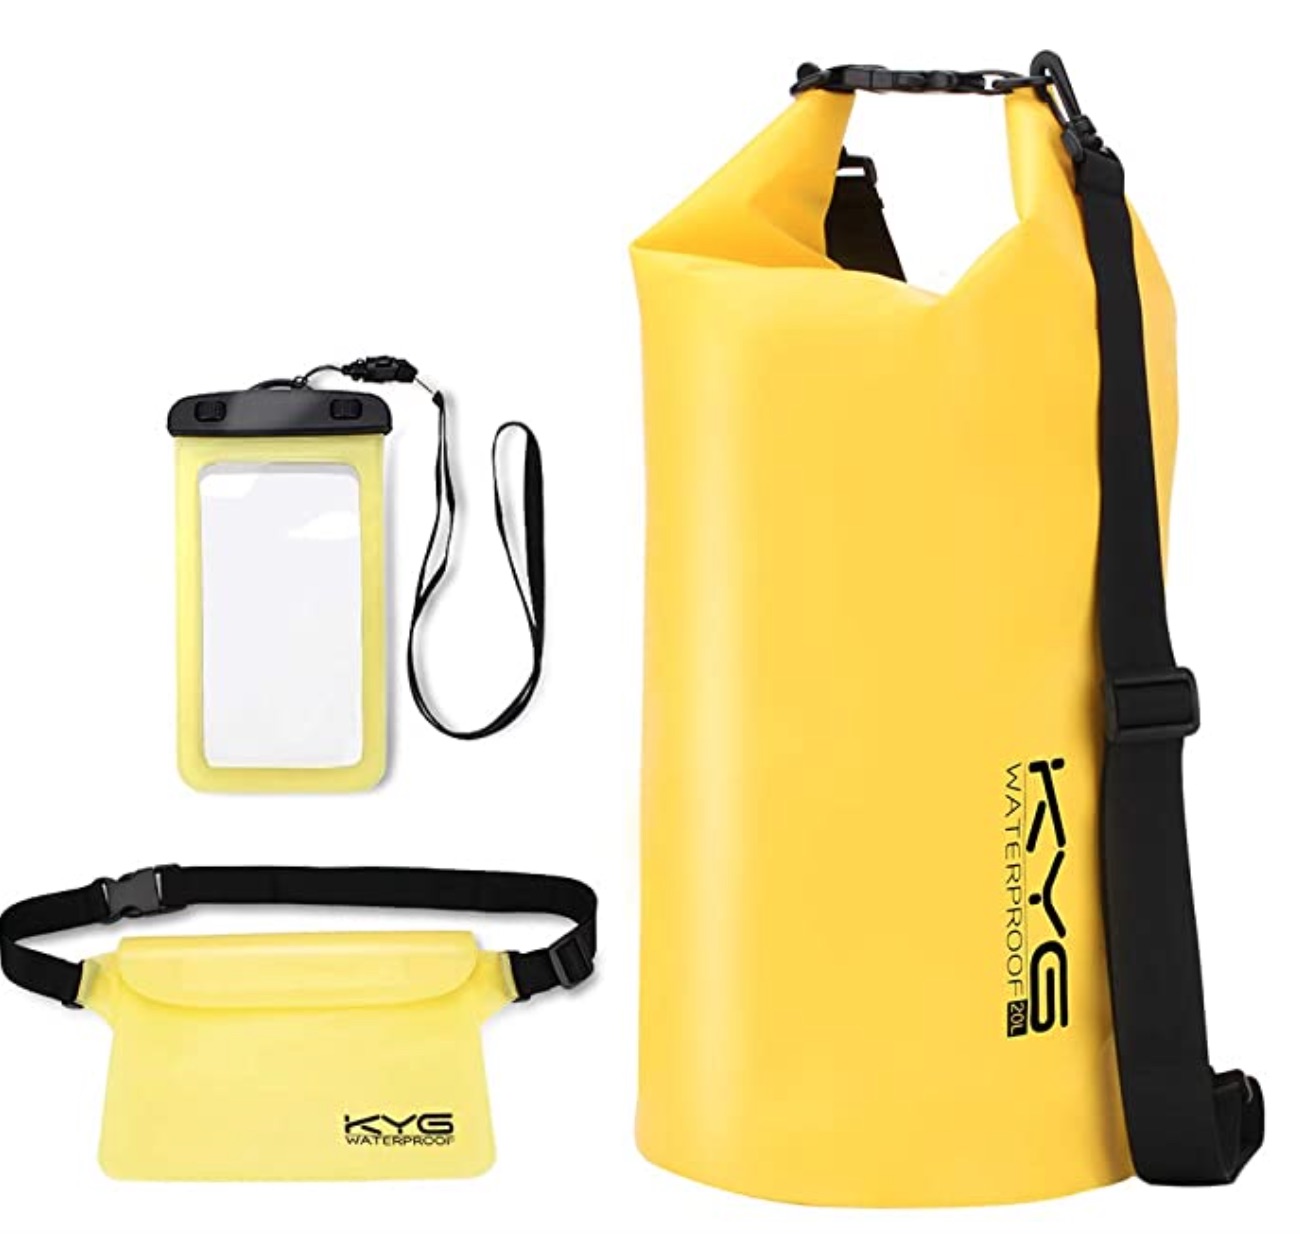 
                                    
                                Zaini, custodie e sacche impermeabili per proteggere dall'acqua cellulari ed effetti personali